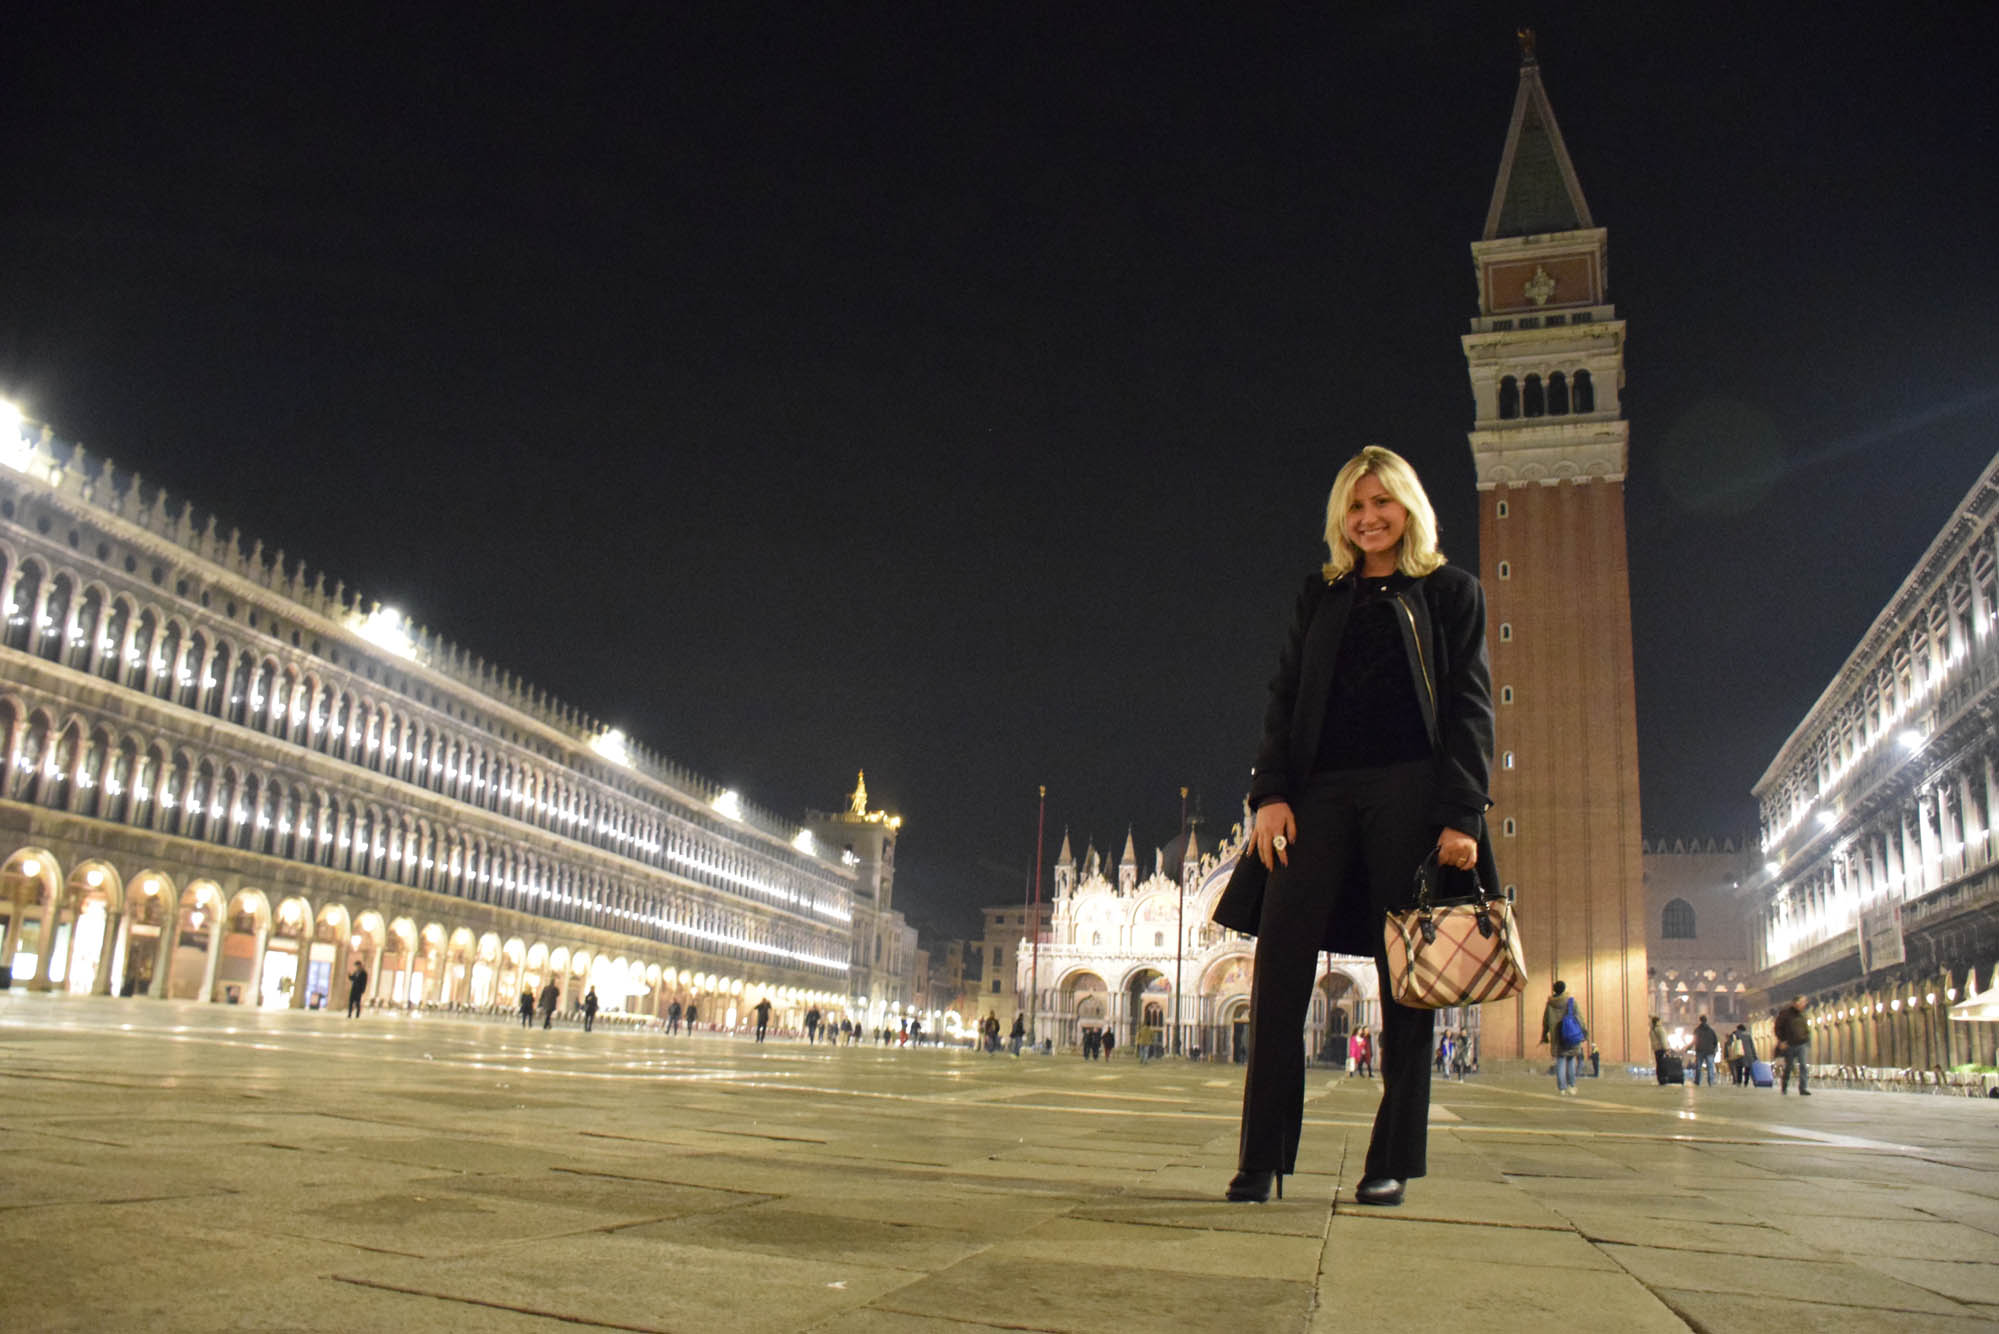 Piazza San Marco a noite: iluminada, linda, vazia, imponente e SEM POMBAS!! o/